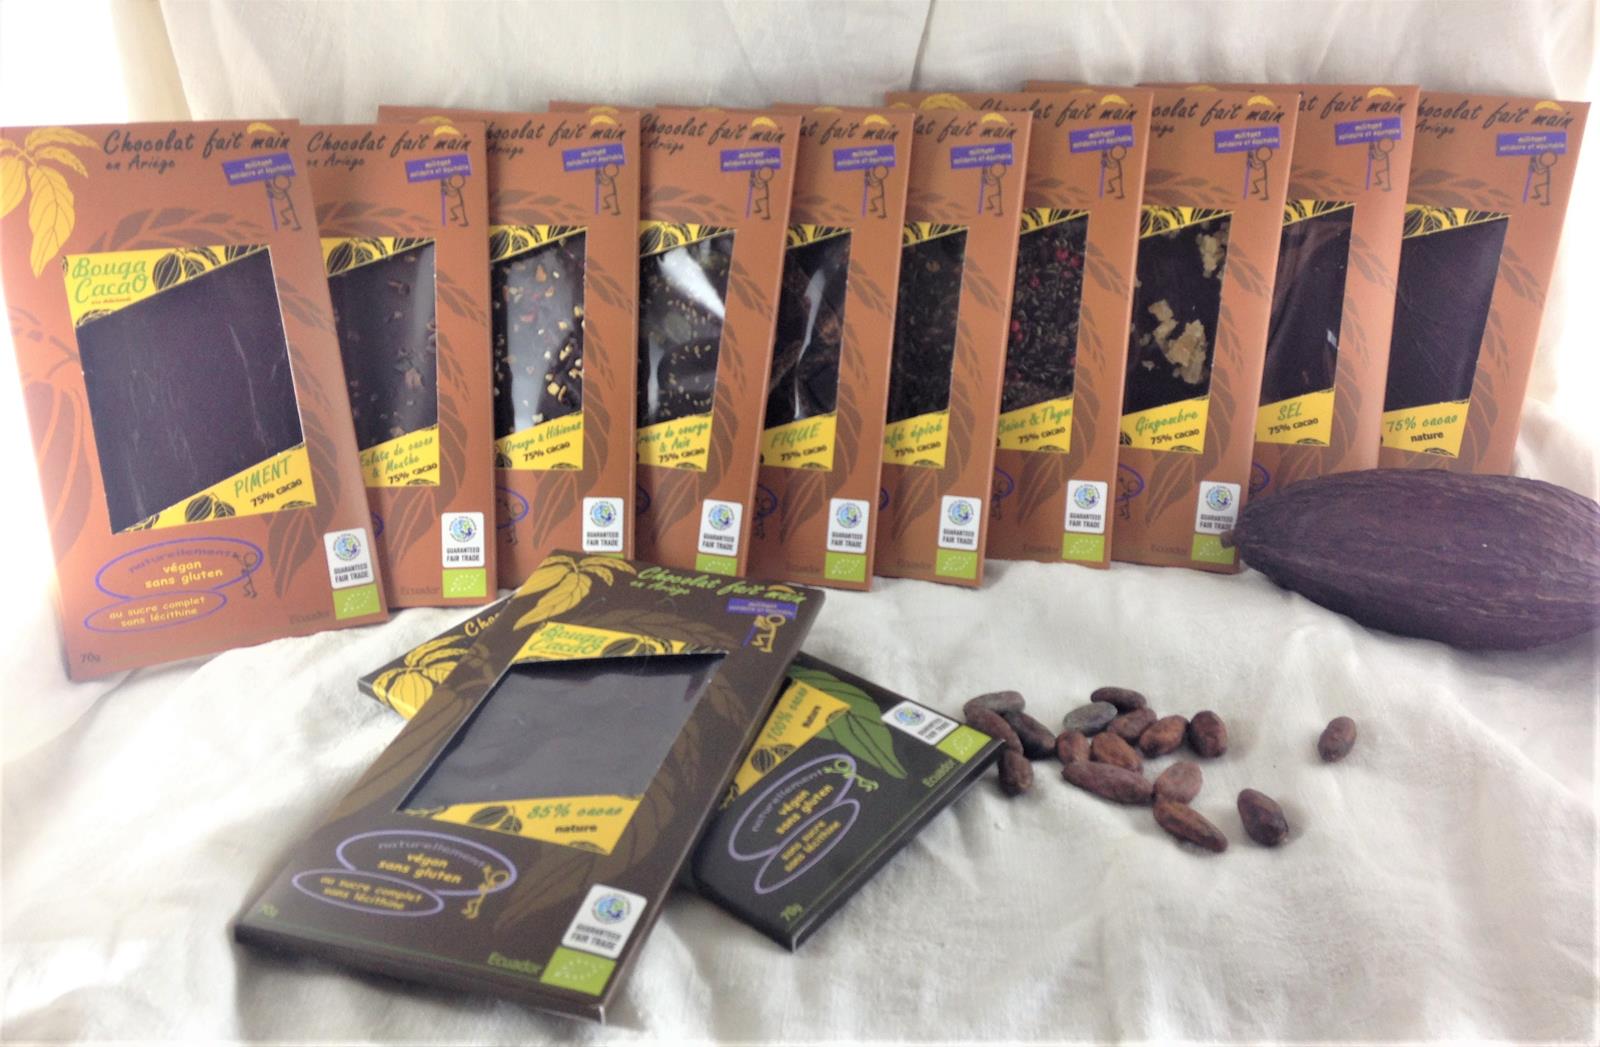 Chocolat bio artisanal : tablette bio au chocolat Lait 100g - Tablette des  Normands